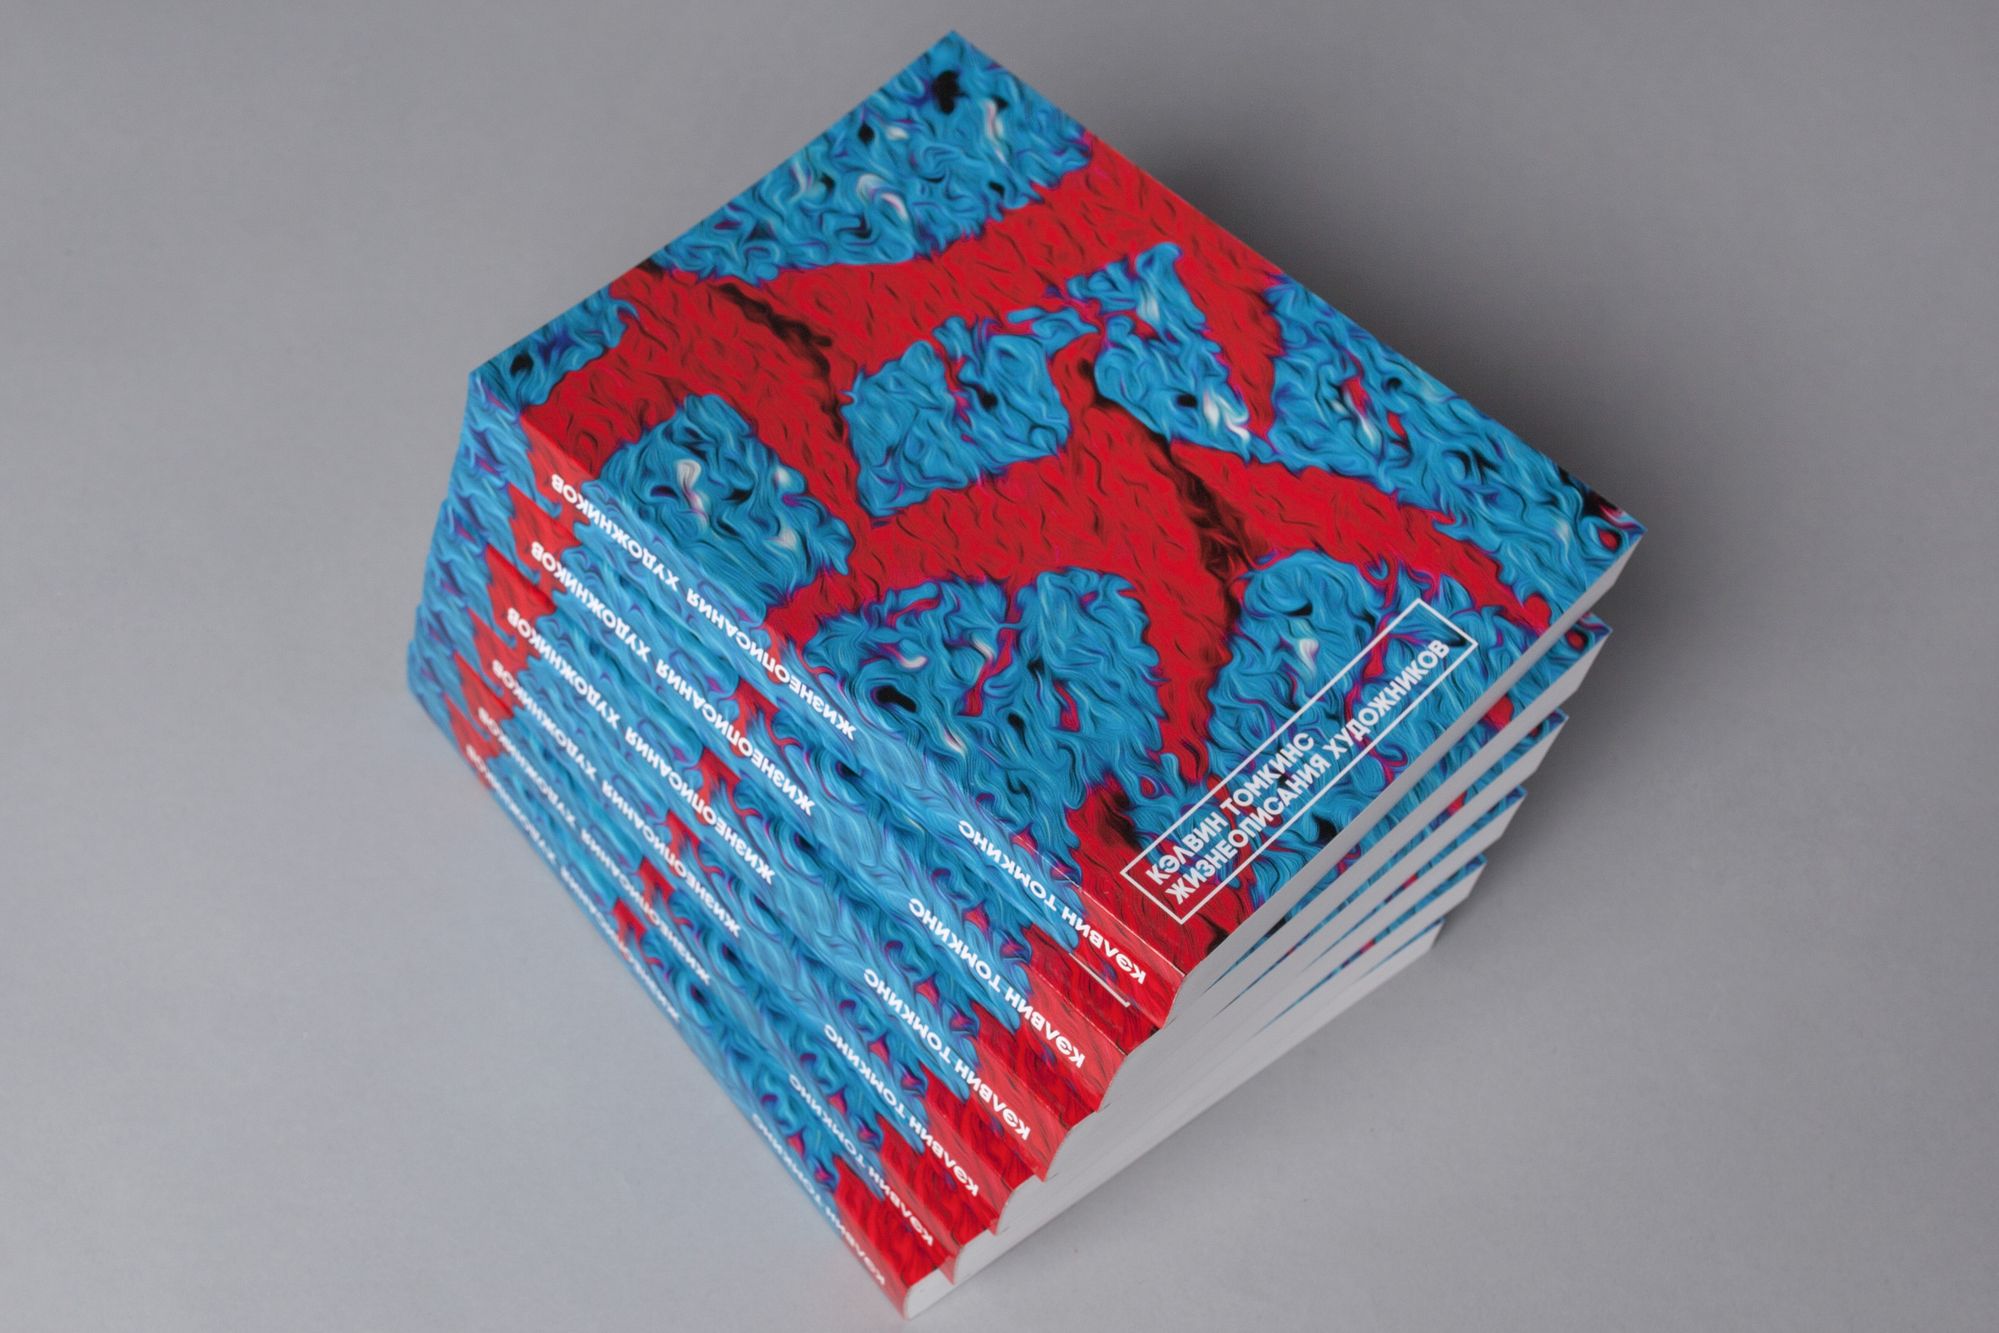 Фотография стопки книг в мягкой обложки с оформлением в голубых и красных тонах